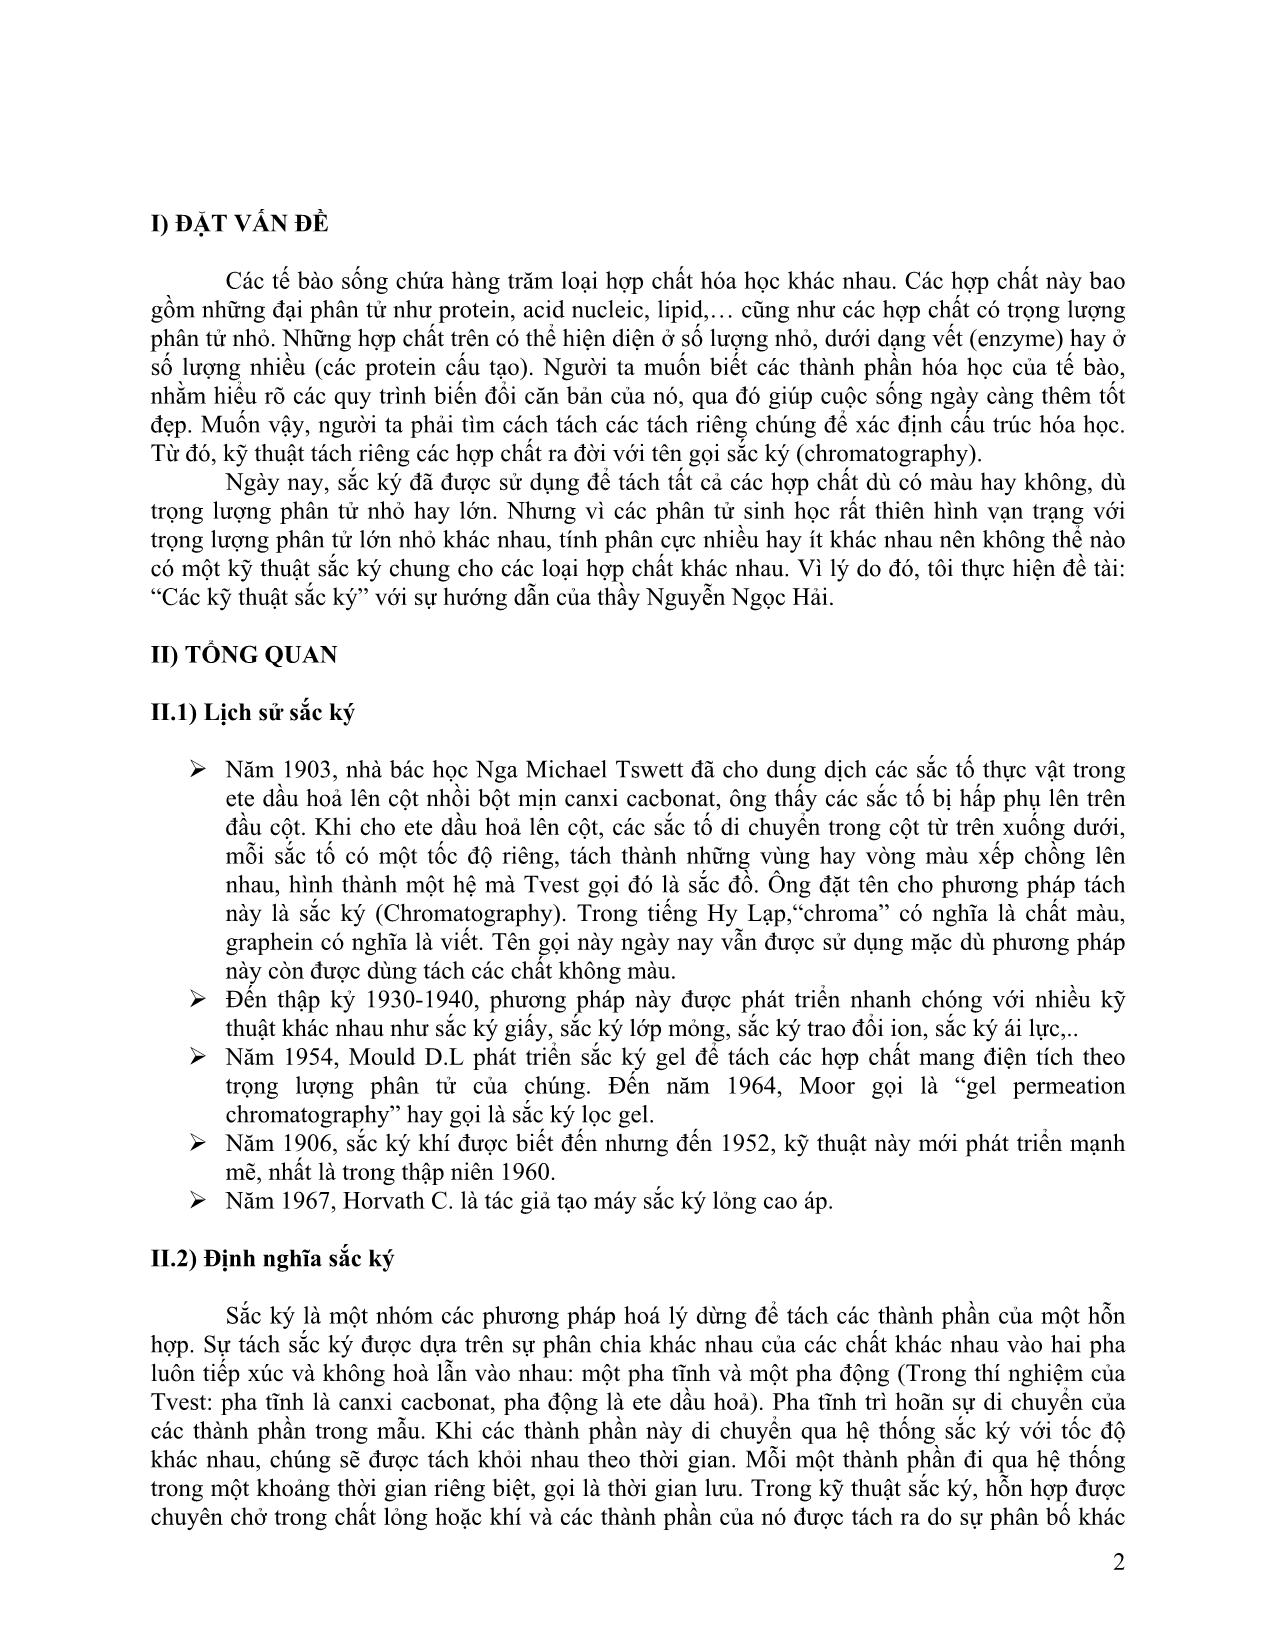 Tiểu luận Các kỹ thuật sắc ký trang 2